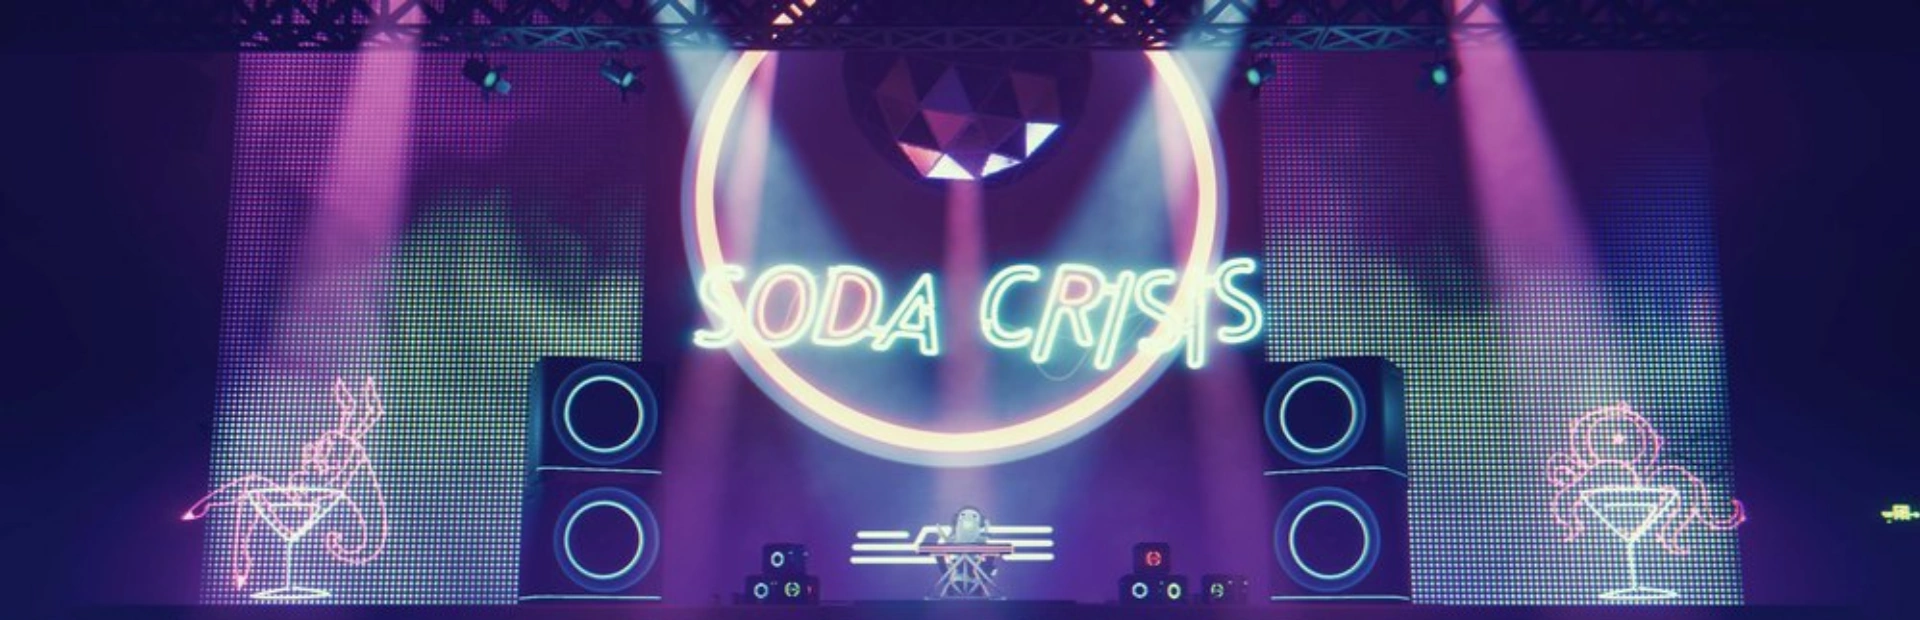 دانلود بازی Soda Crisis برای کامپیوتر | گیمباتو